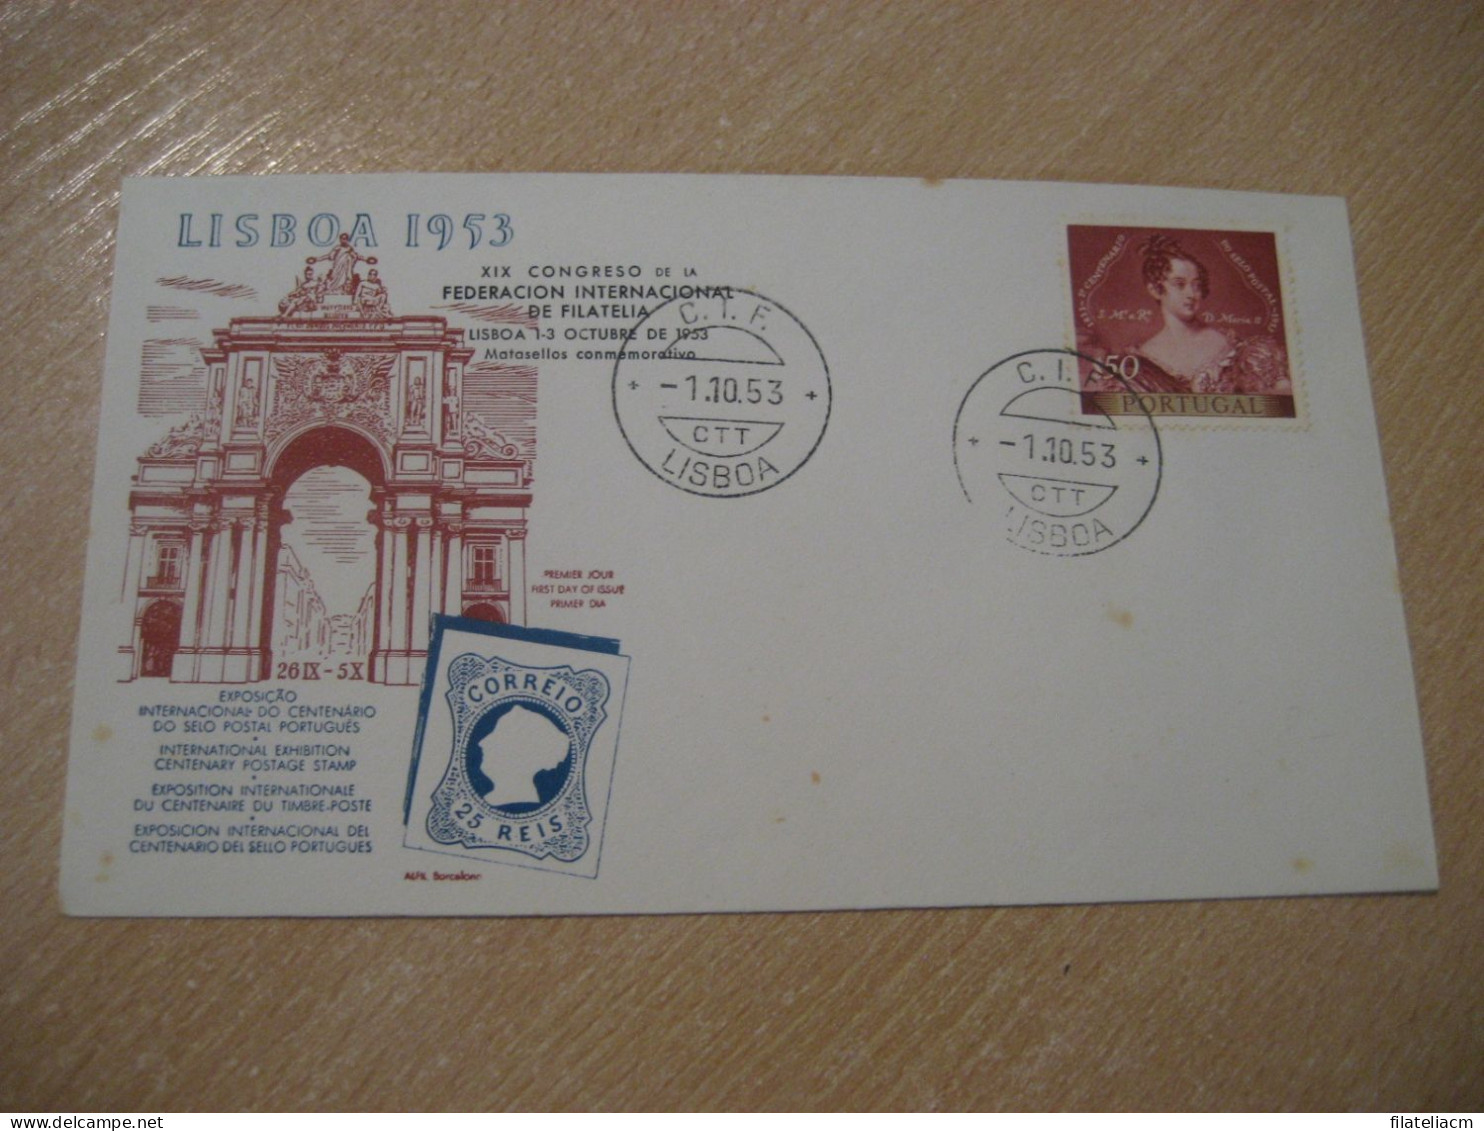 LISBOA 1953 C.I.F. CIF Expo Filatelica Int. Centenary Postage Stamp Cancel Cover PORTUGAL - Briefe U. Dokumente